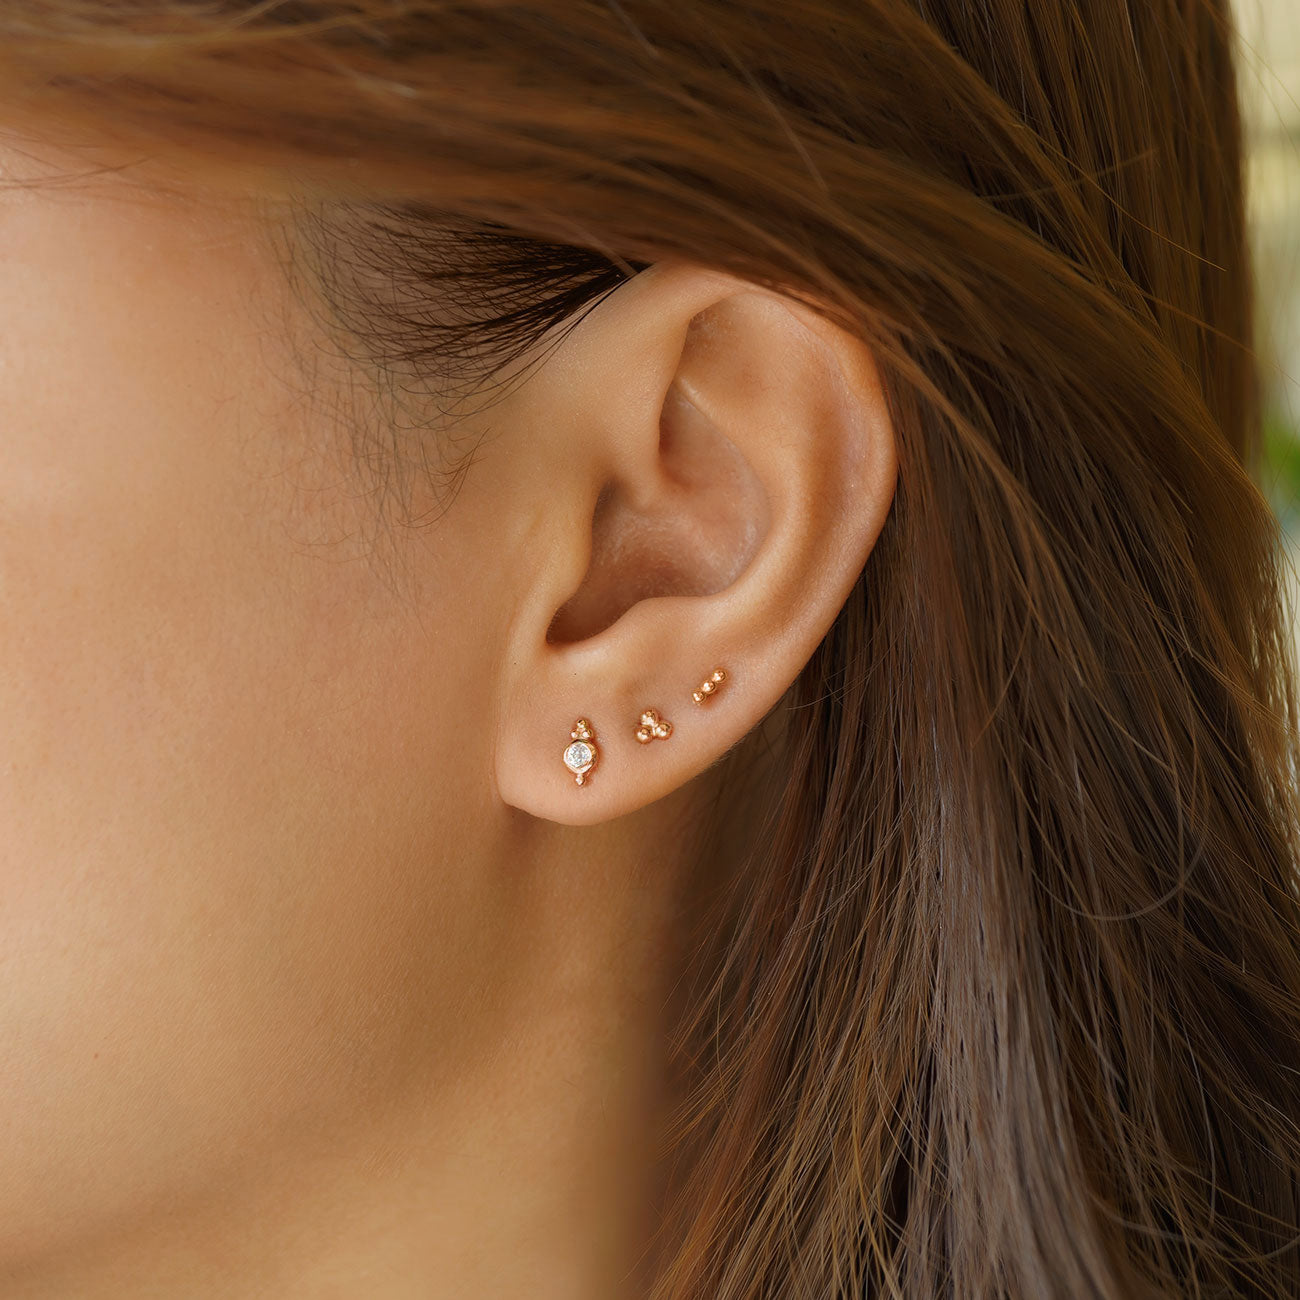 Kendra Scott Iris 14k Gold Over Brass Stud Earring Set - Gold : Target